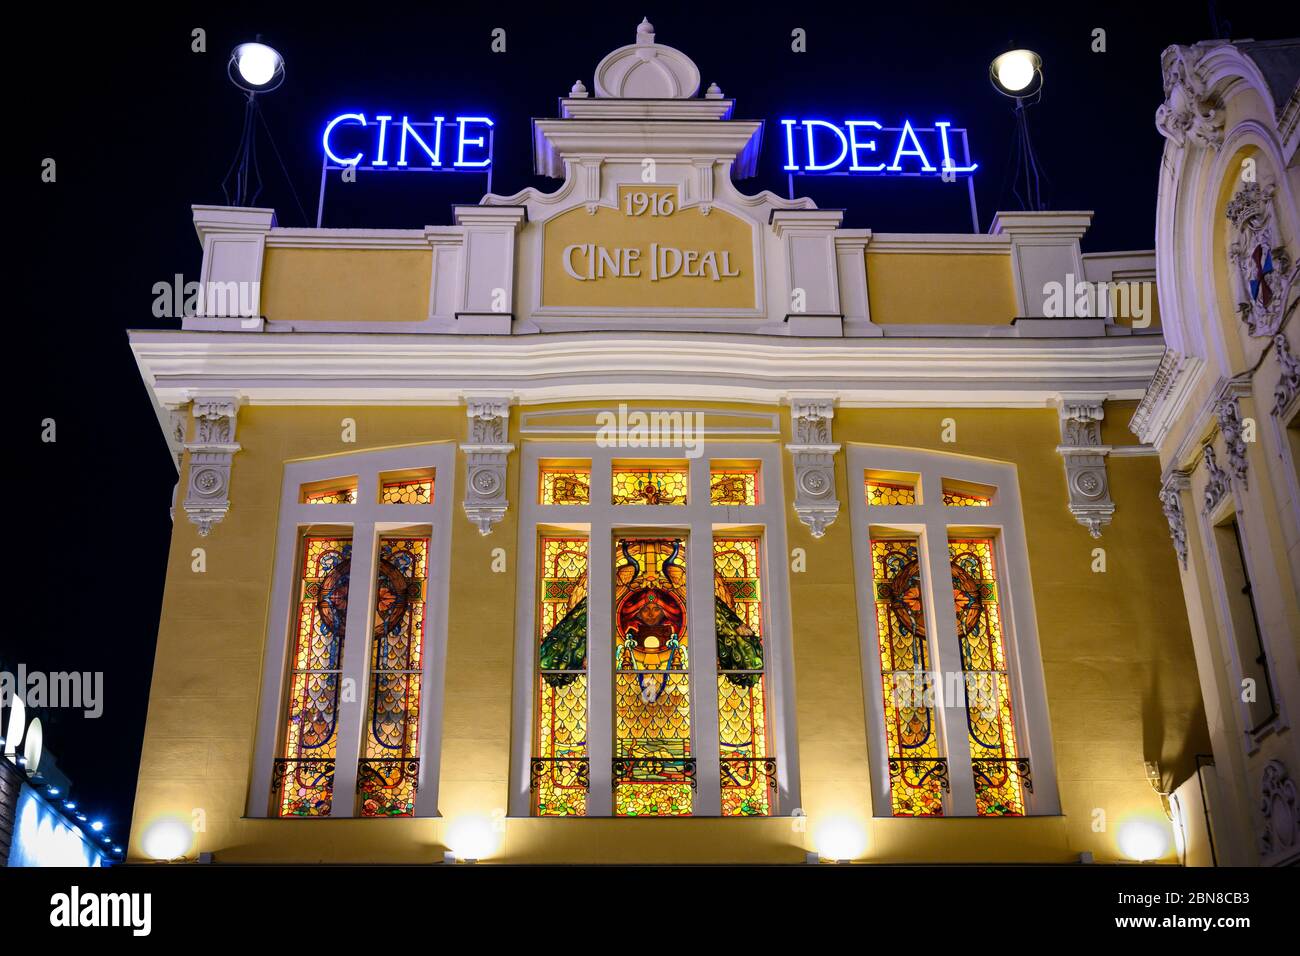 Das Yelmo Cine ist eines der ältesten Kinos Madrids um 1916. Mit staind Glasfenstern, die der Casa Maumejean Fabrik, Calle del Doctor zugeschrieben werden Stockfoto